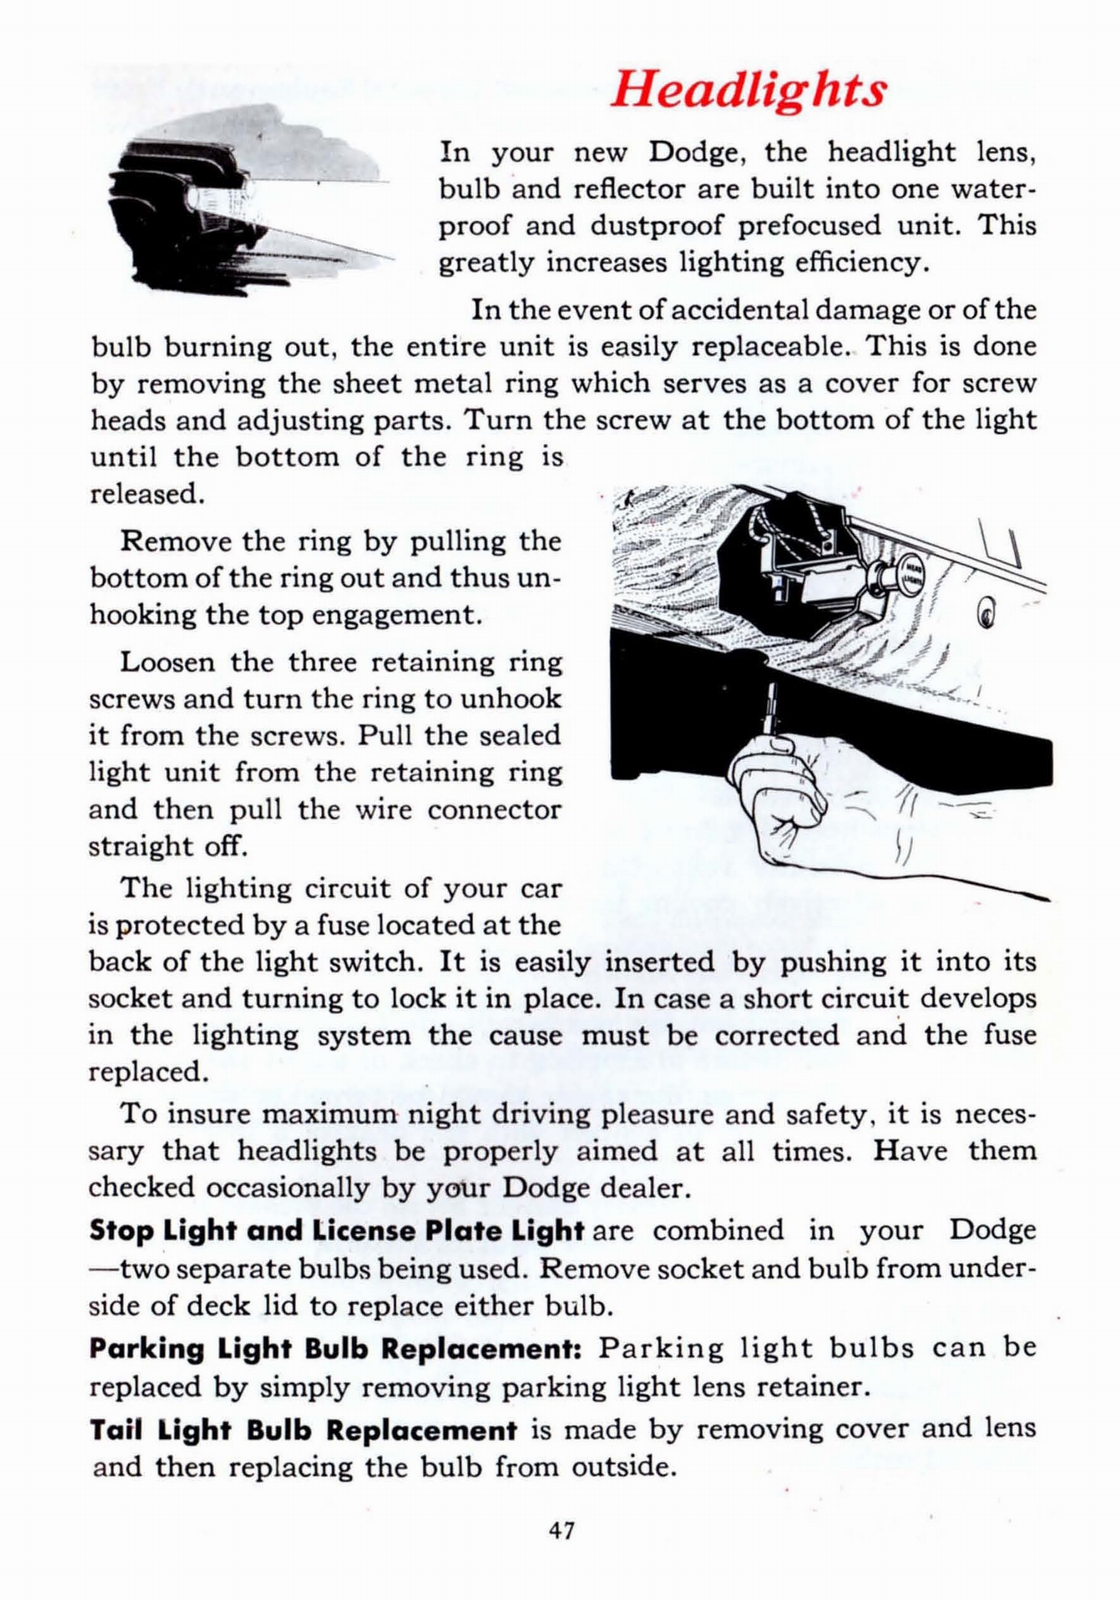 n_1941 Dodge Owners Manual-47.jpg